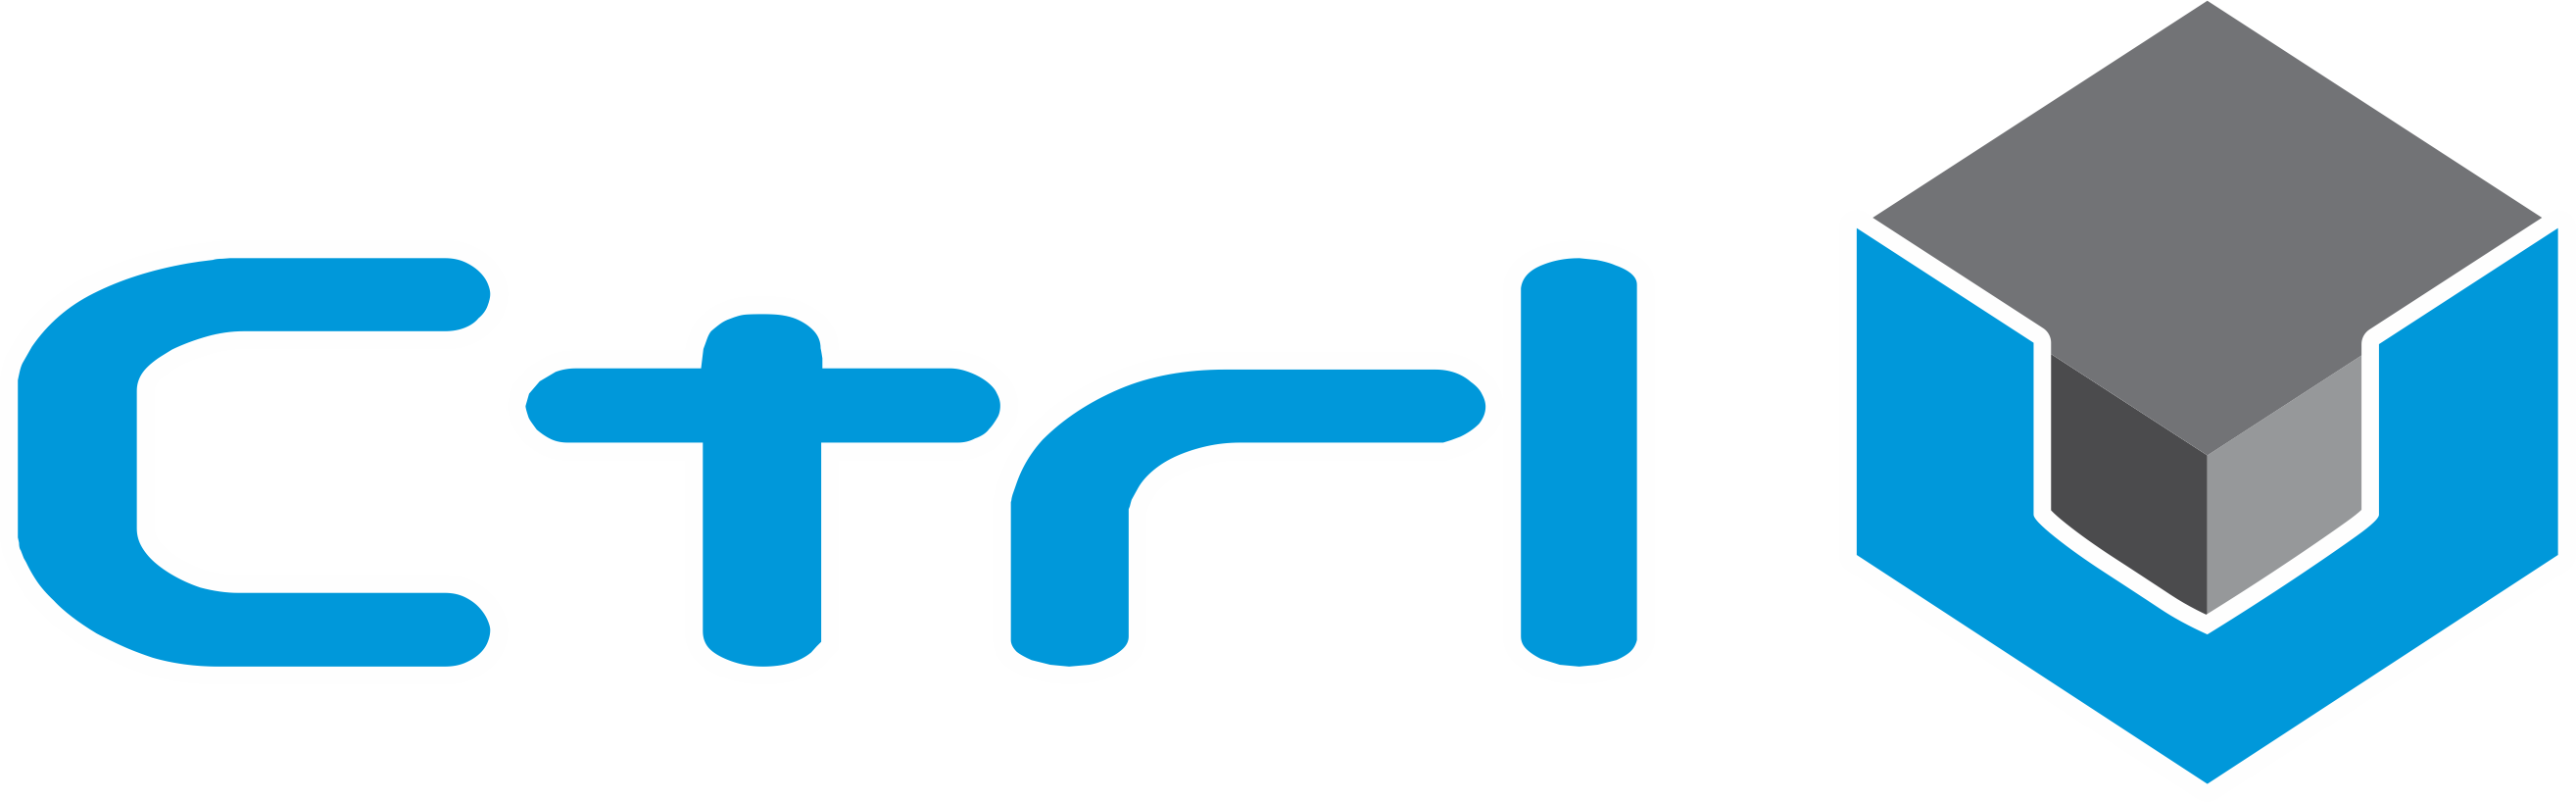 FranNet Verified Brand - CTRL V Logo